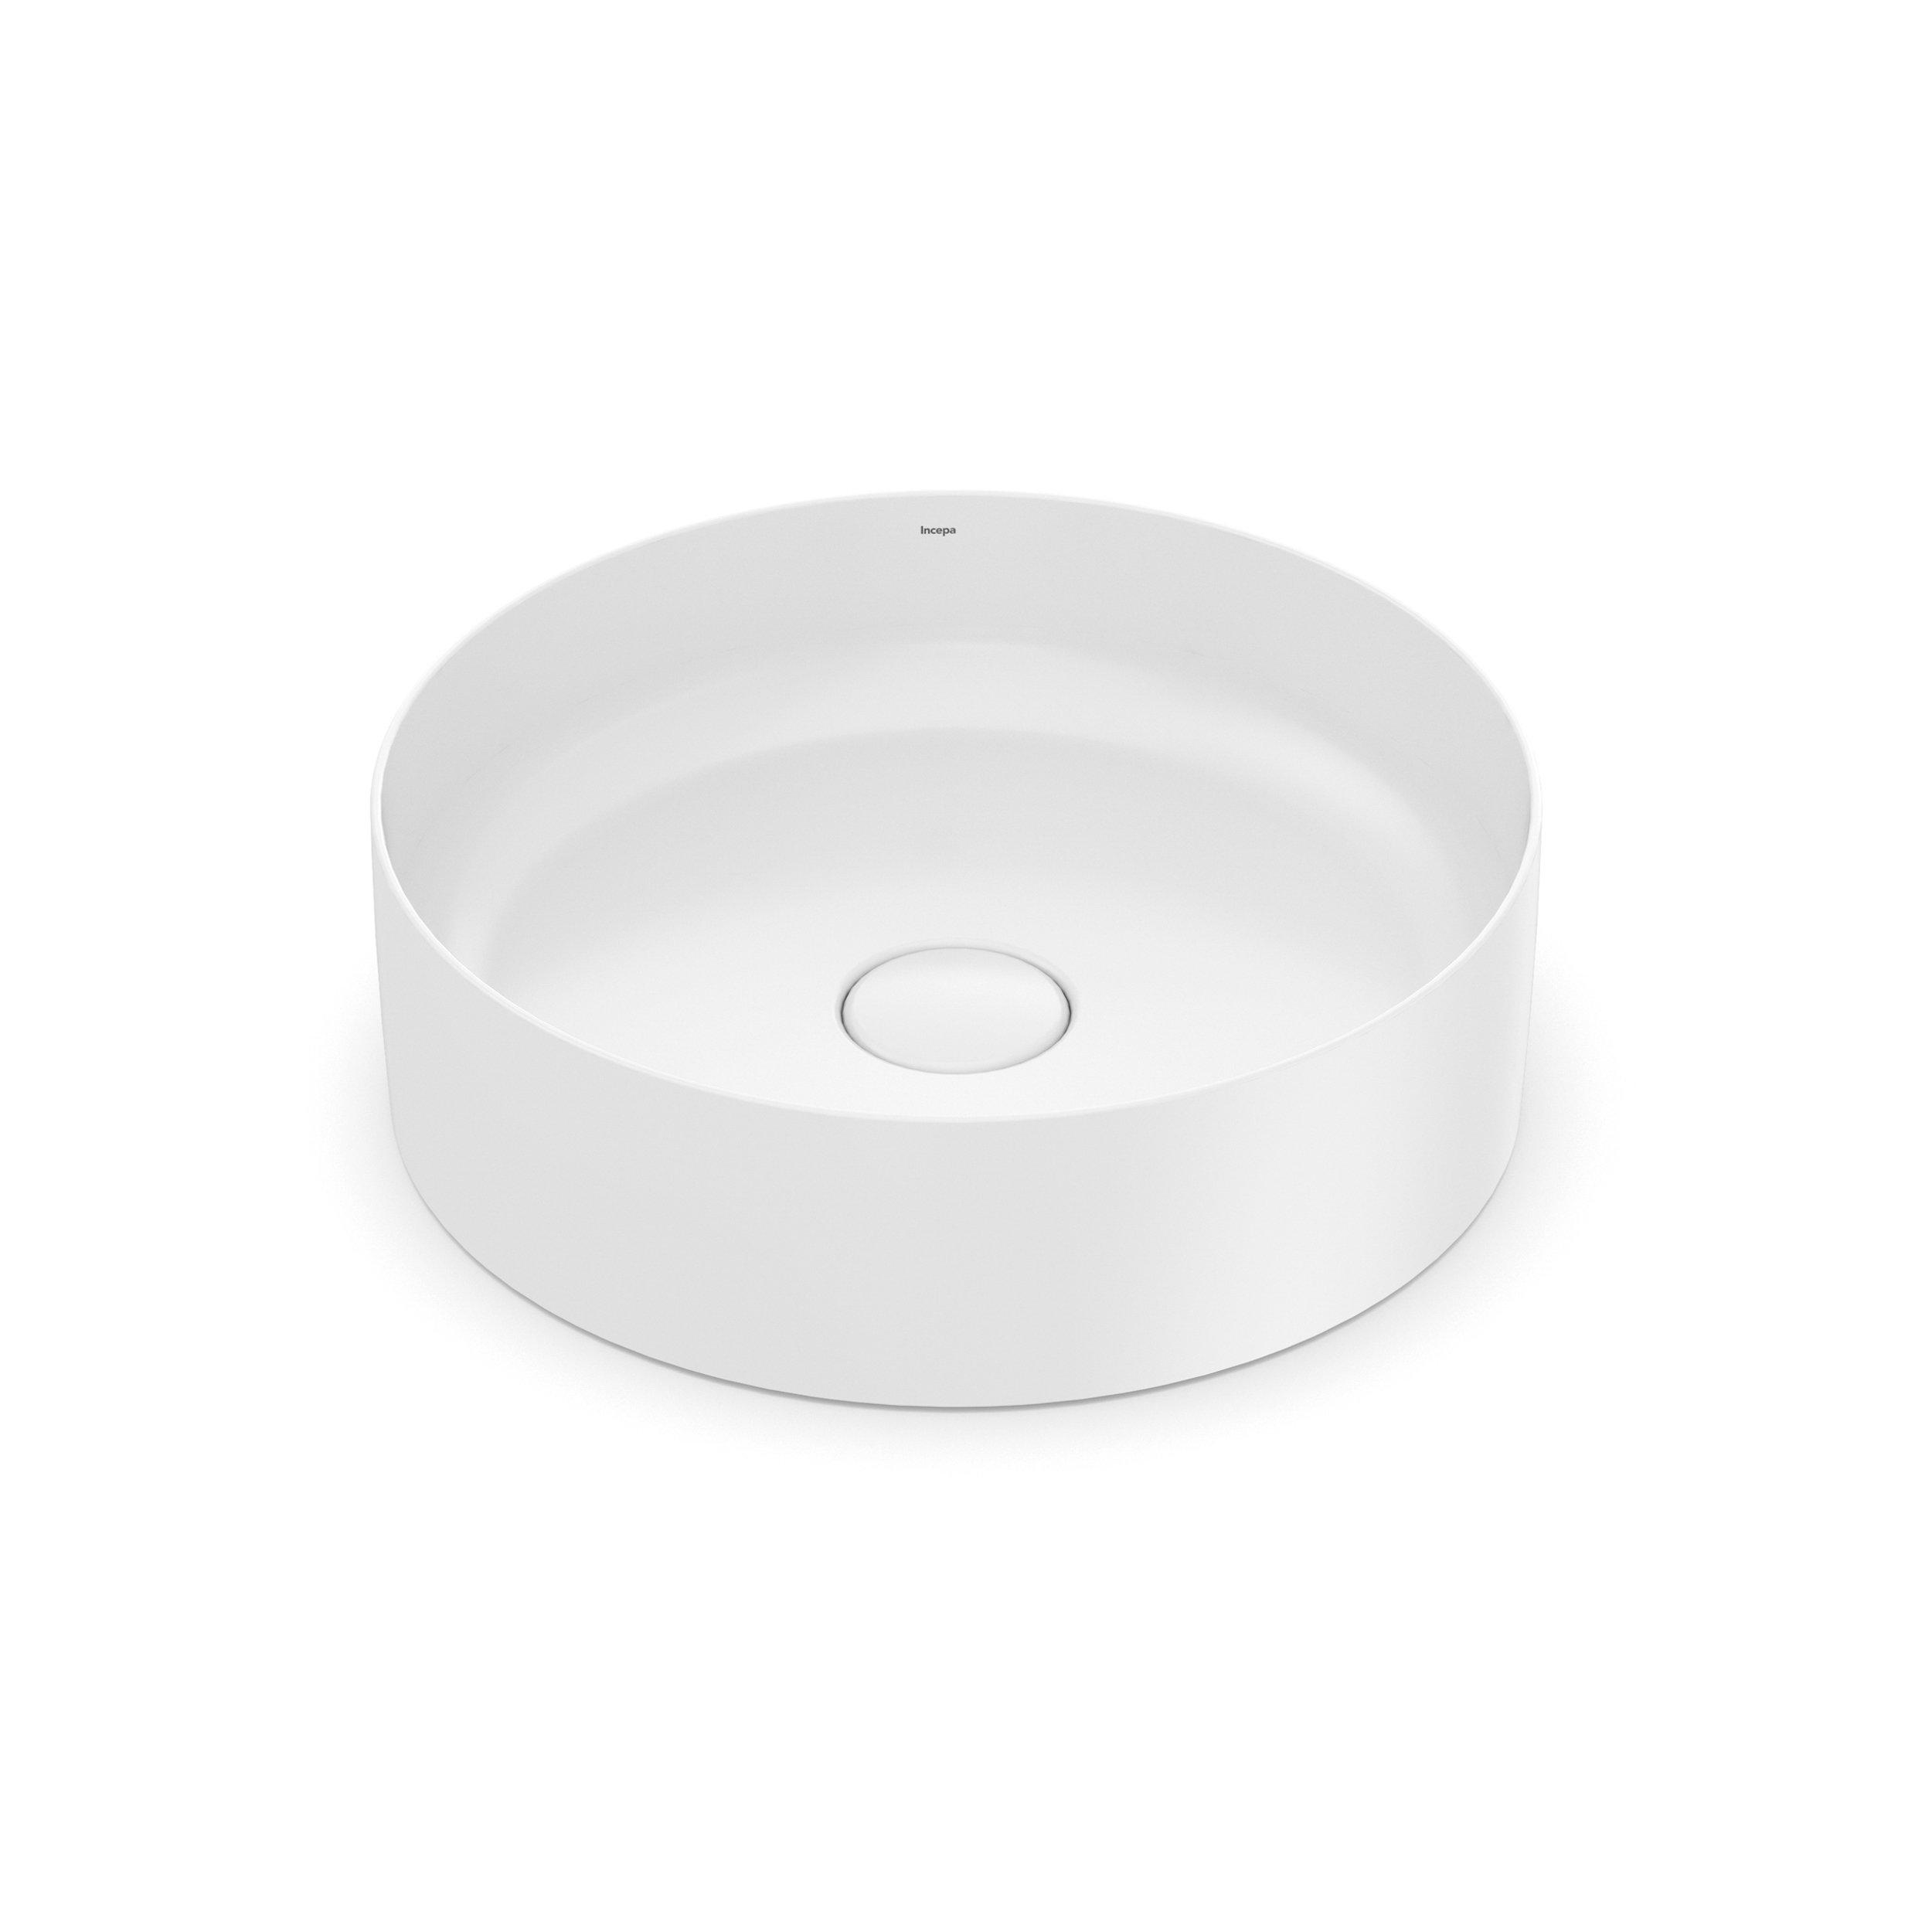 Bright White Round Porcelain Sink